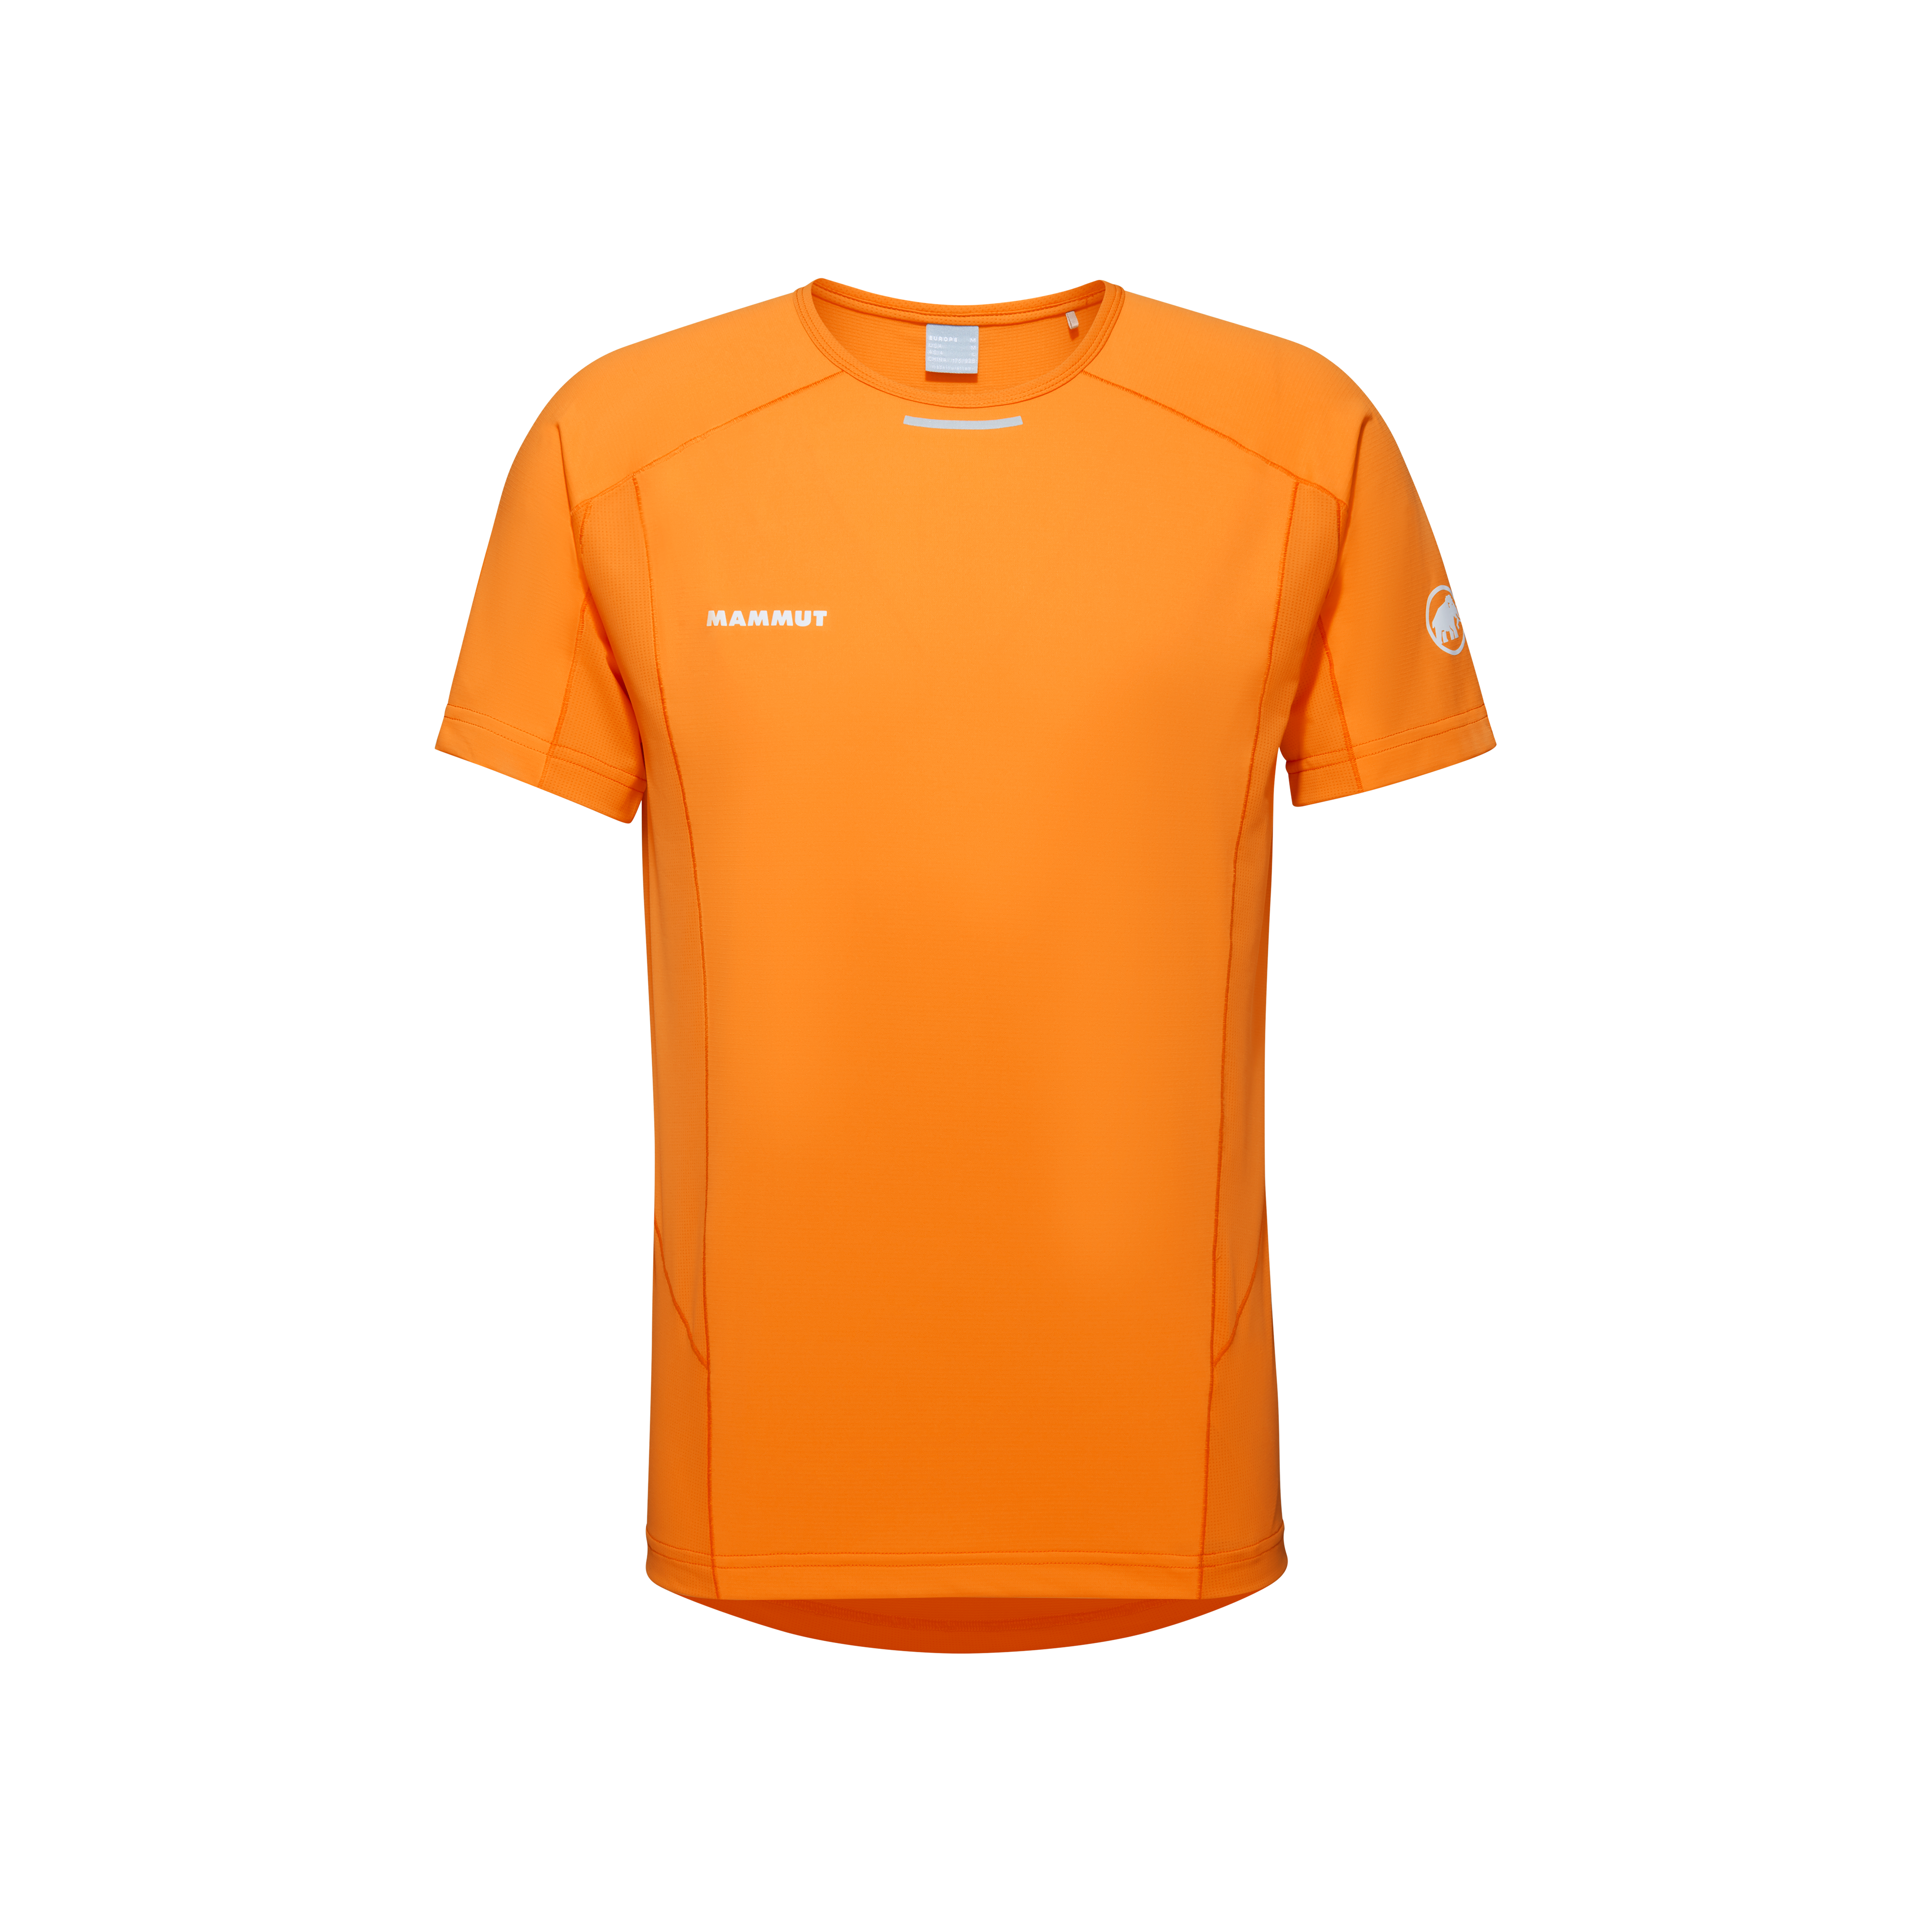 Aenergy FL T-Shirt Men - tangerine-dark tangerine, S thumbnail